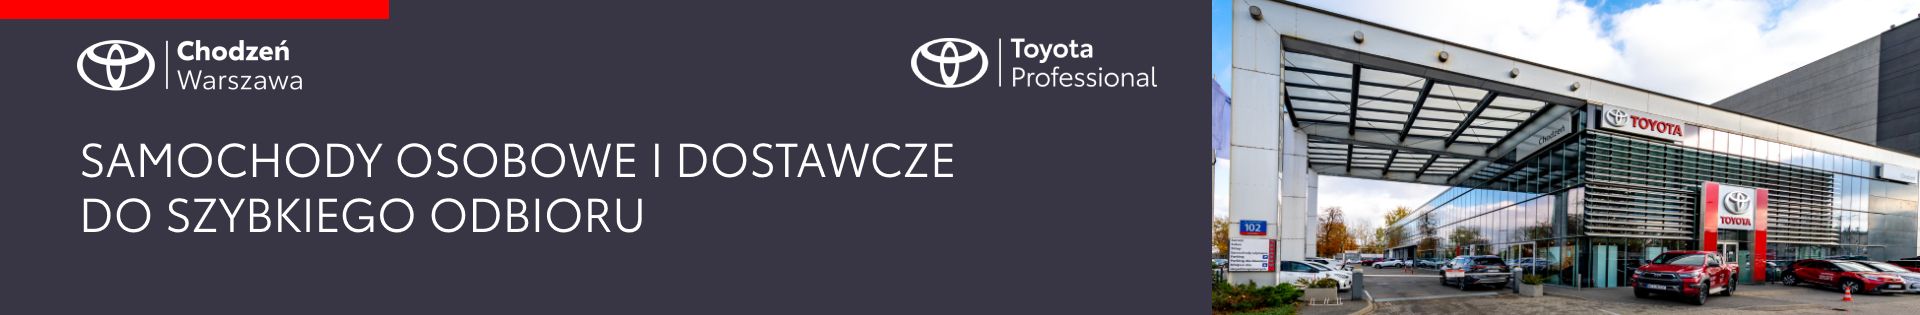 Toyota Chodzeń Warszawa – Samochody Nowe i Dostawcze top banner